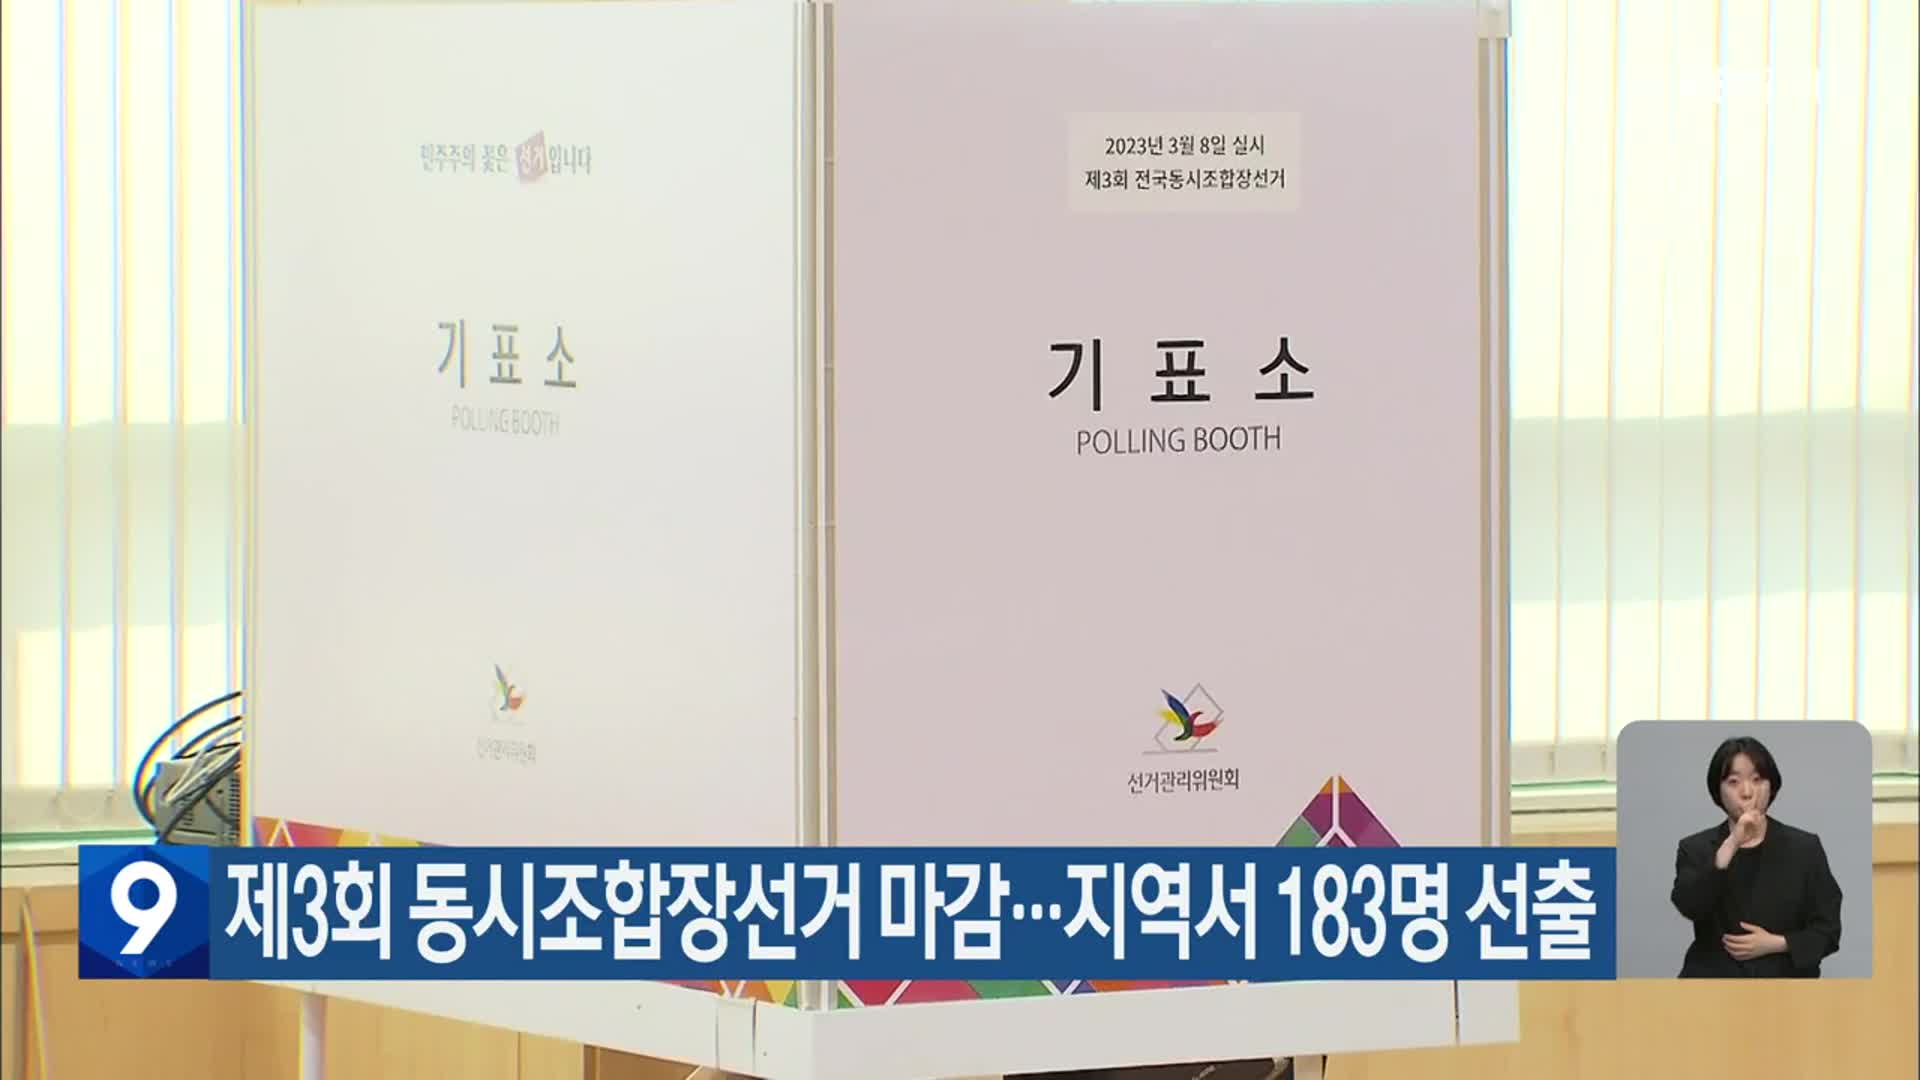 제3회 동시조합장선거 마감…대전·세종·충남서 183명 선출